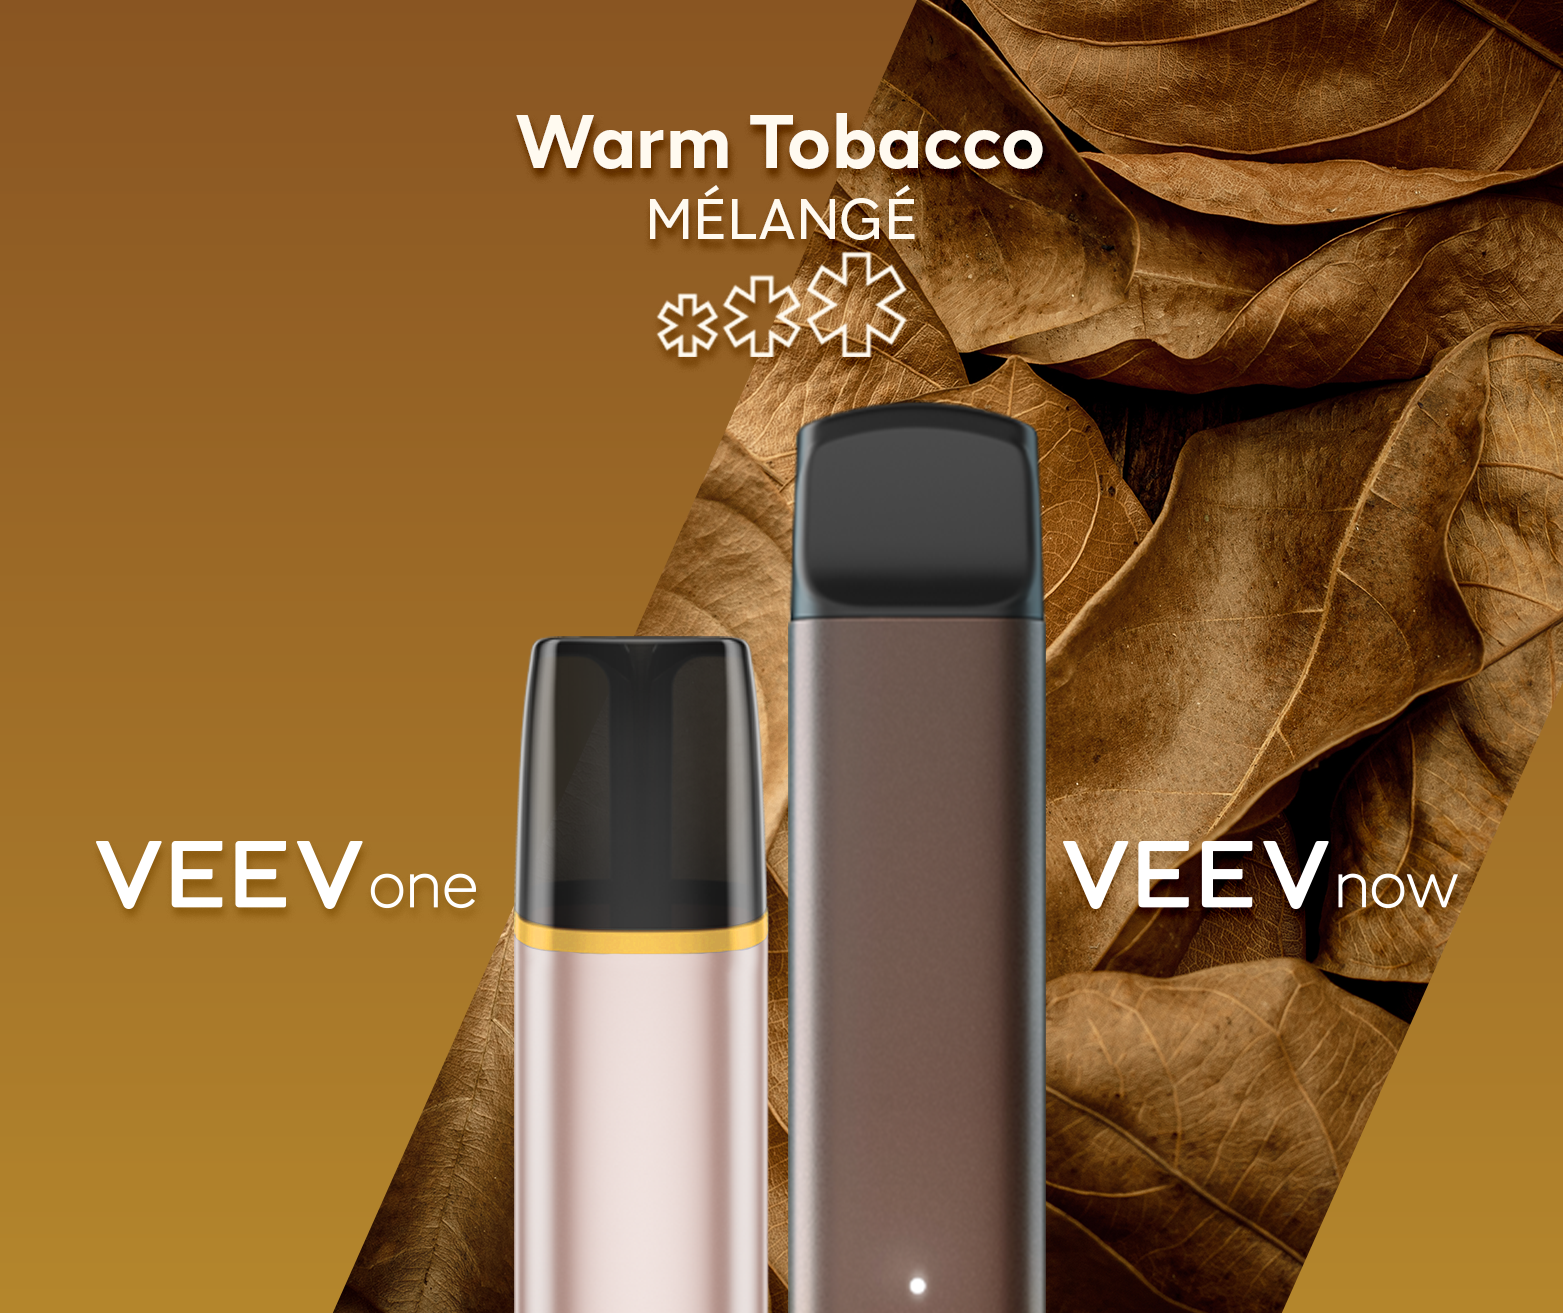 Un appareil à capsule VEEV ONE et un appareil jetable VEEV NOW, tous deux en saveur Warm Tobacco.